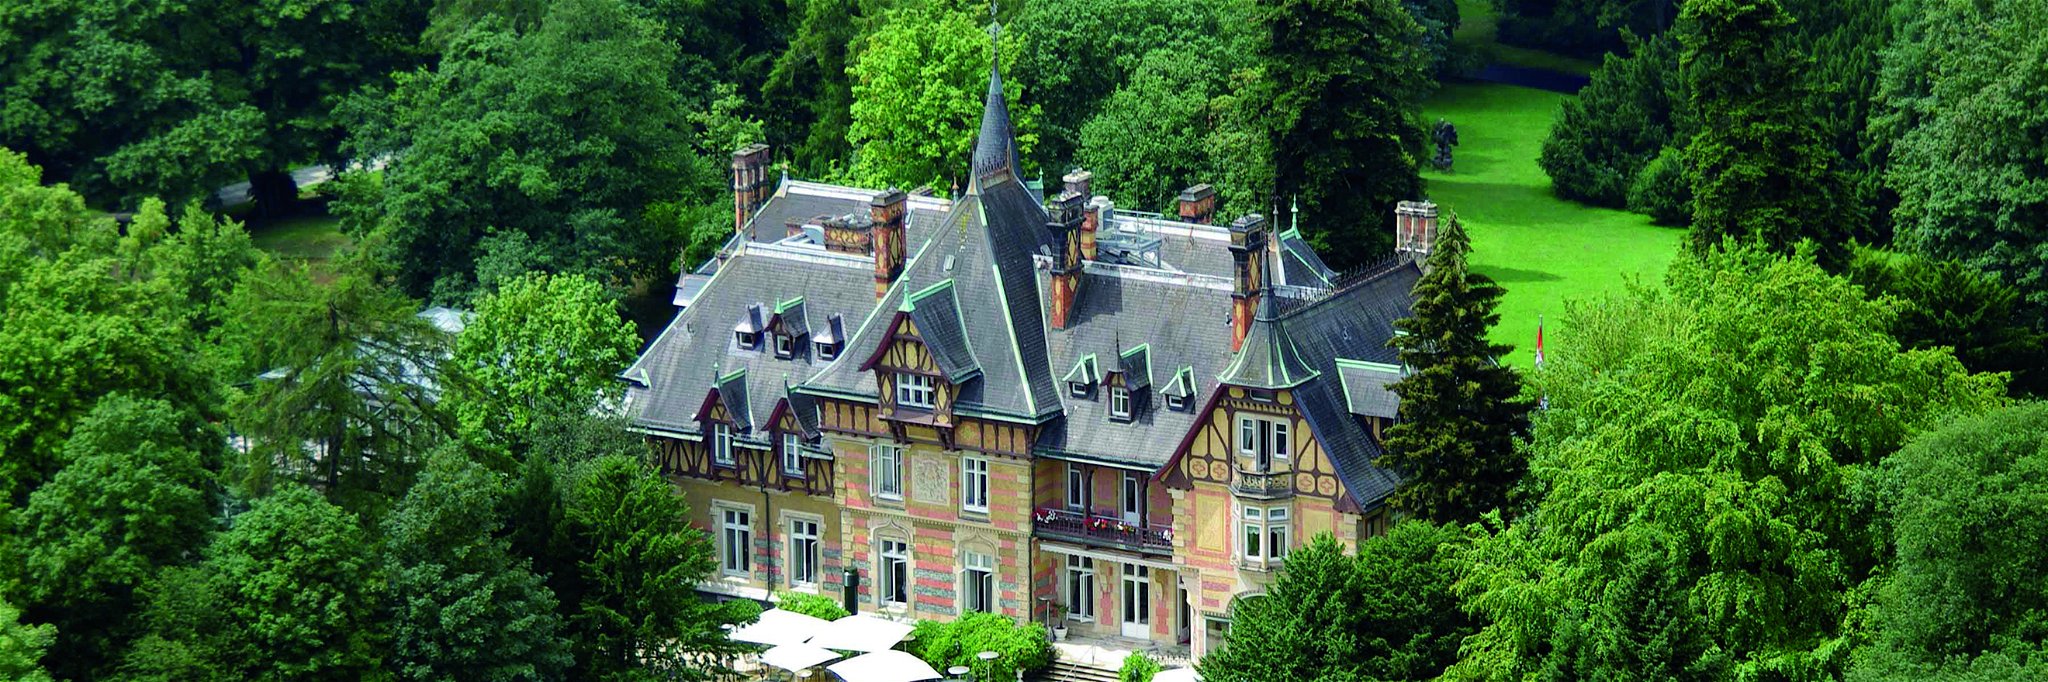 Heiterer Landhausschick mit Stil in der Villa Rothschild.